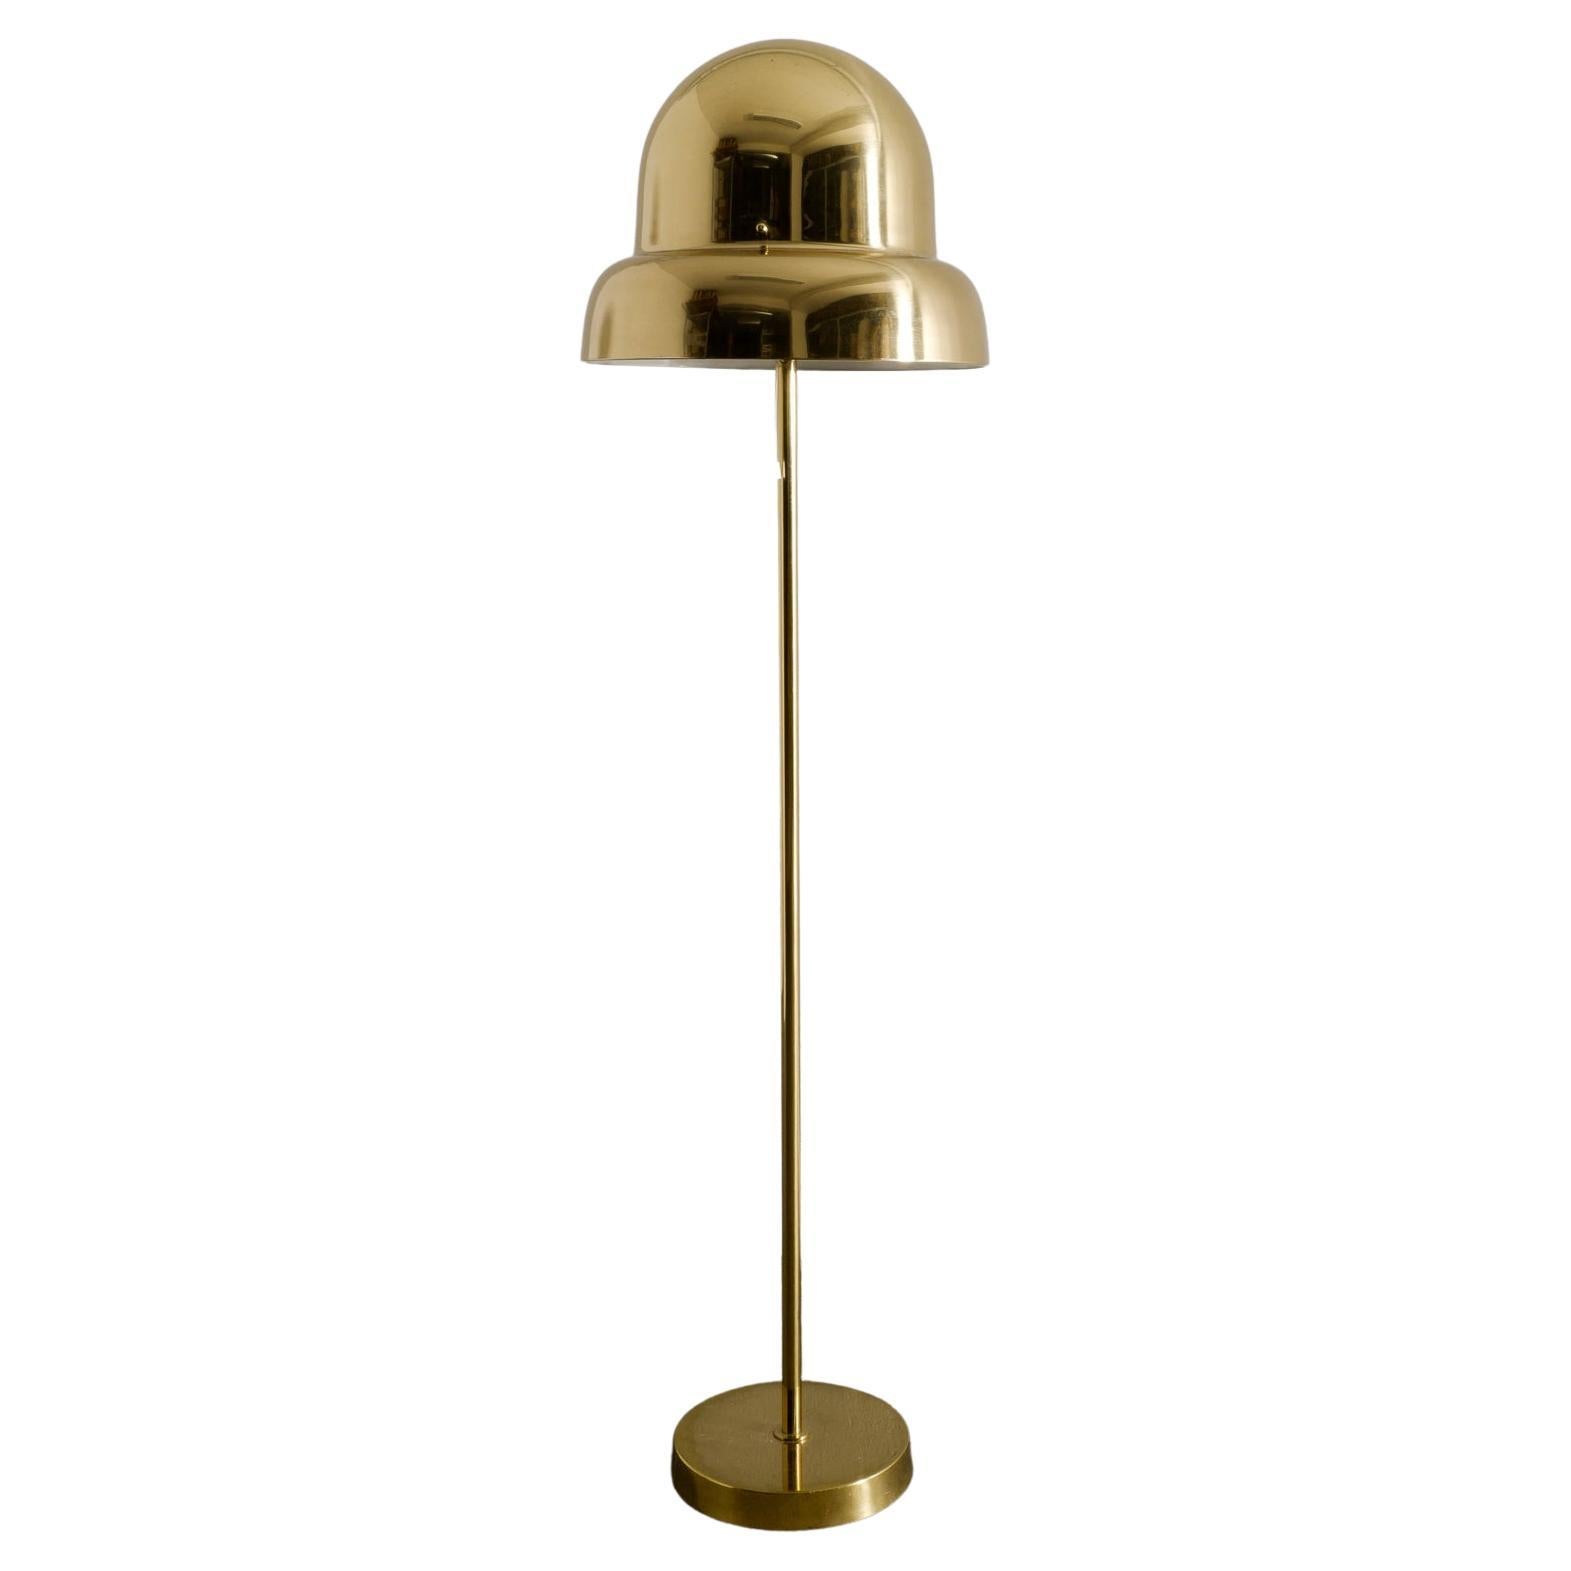 Midcentury "G-125" Floor Lamp in Brass by Eje Ahlgren for Bergboms Sweden, 1960s